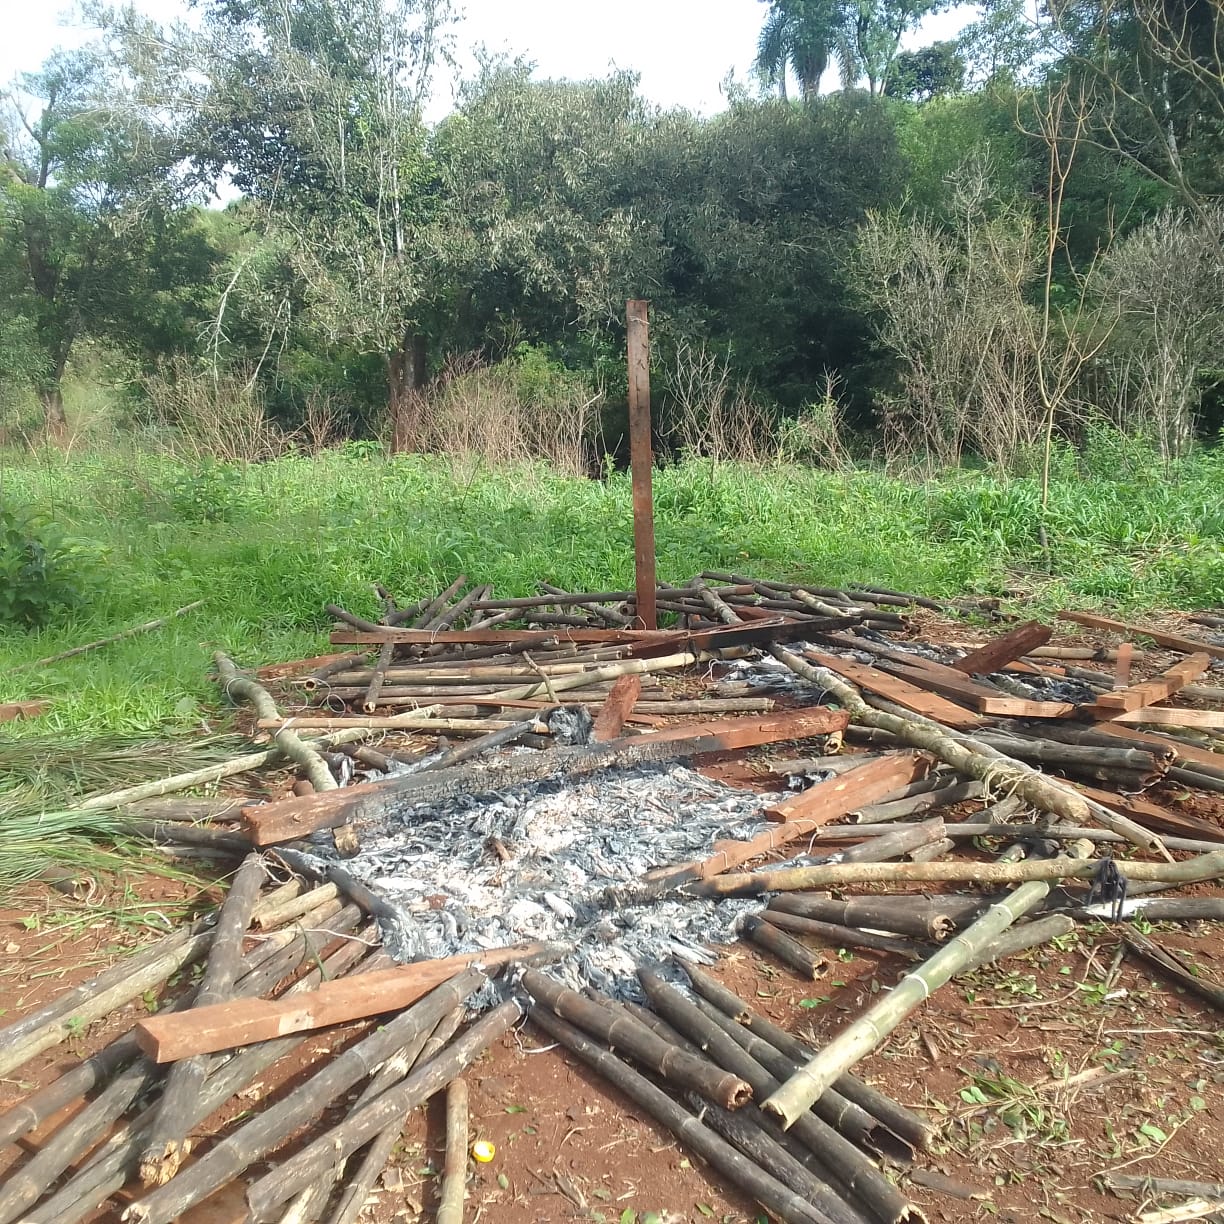 Amenazas de muerte de por medio, prendieron fuego casa de familia Mbya, denuncian imagen-9